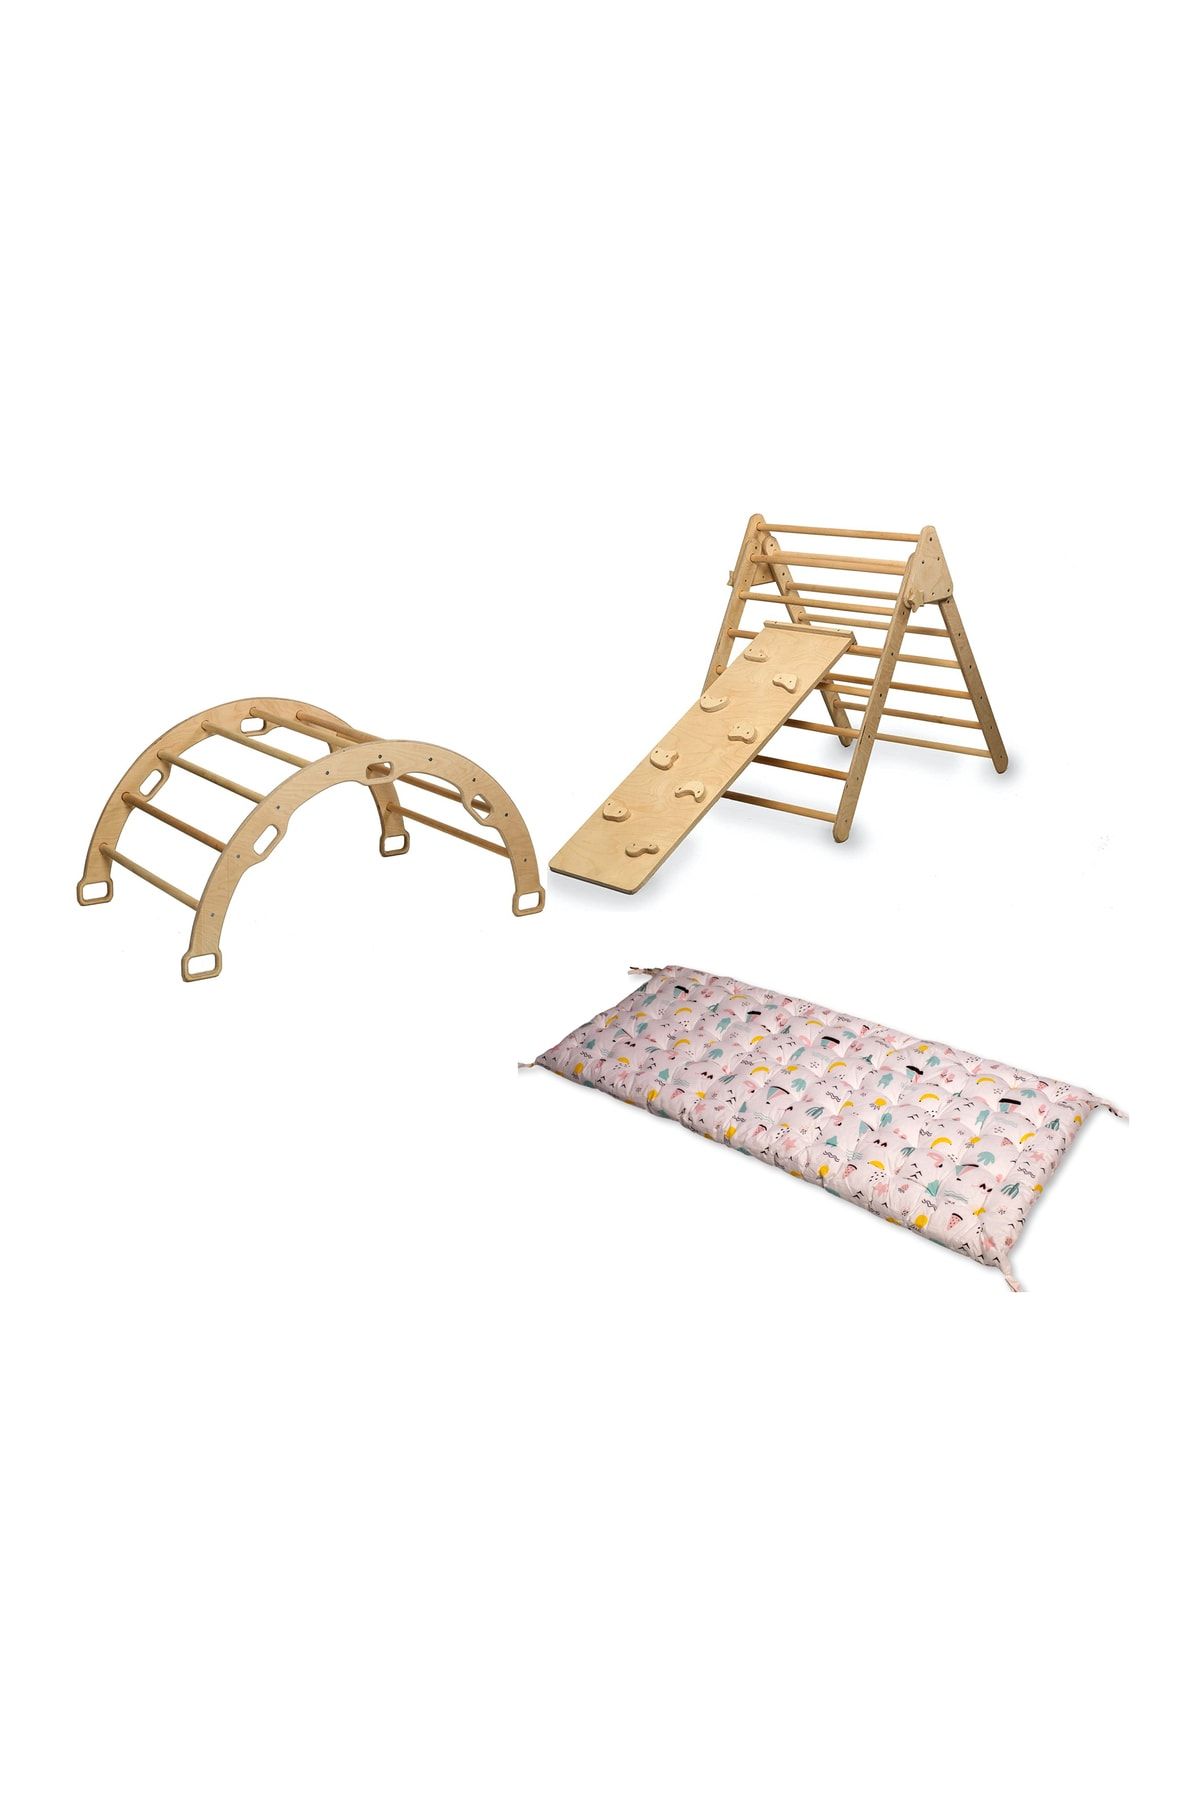 KIDOPPO Pikler Tırmanma Seti Ve Yastık | Montessori 3'lü Set | kemer Üçgen Taşlı Rampa Flamingo Yastık